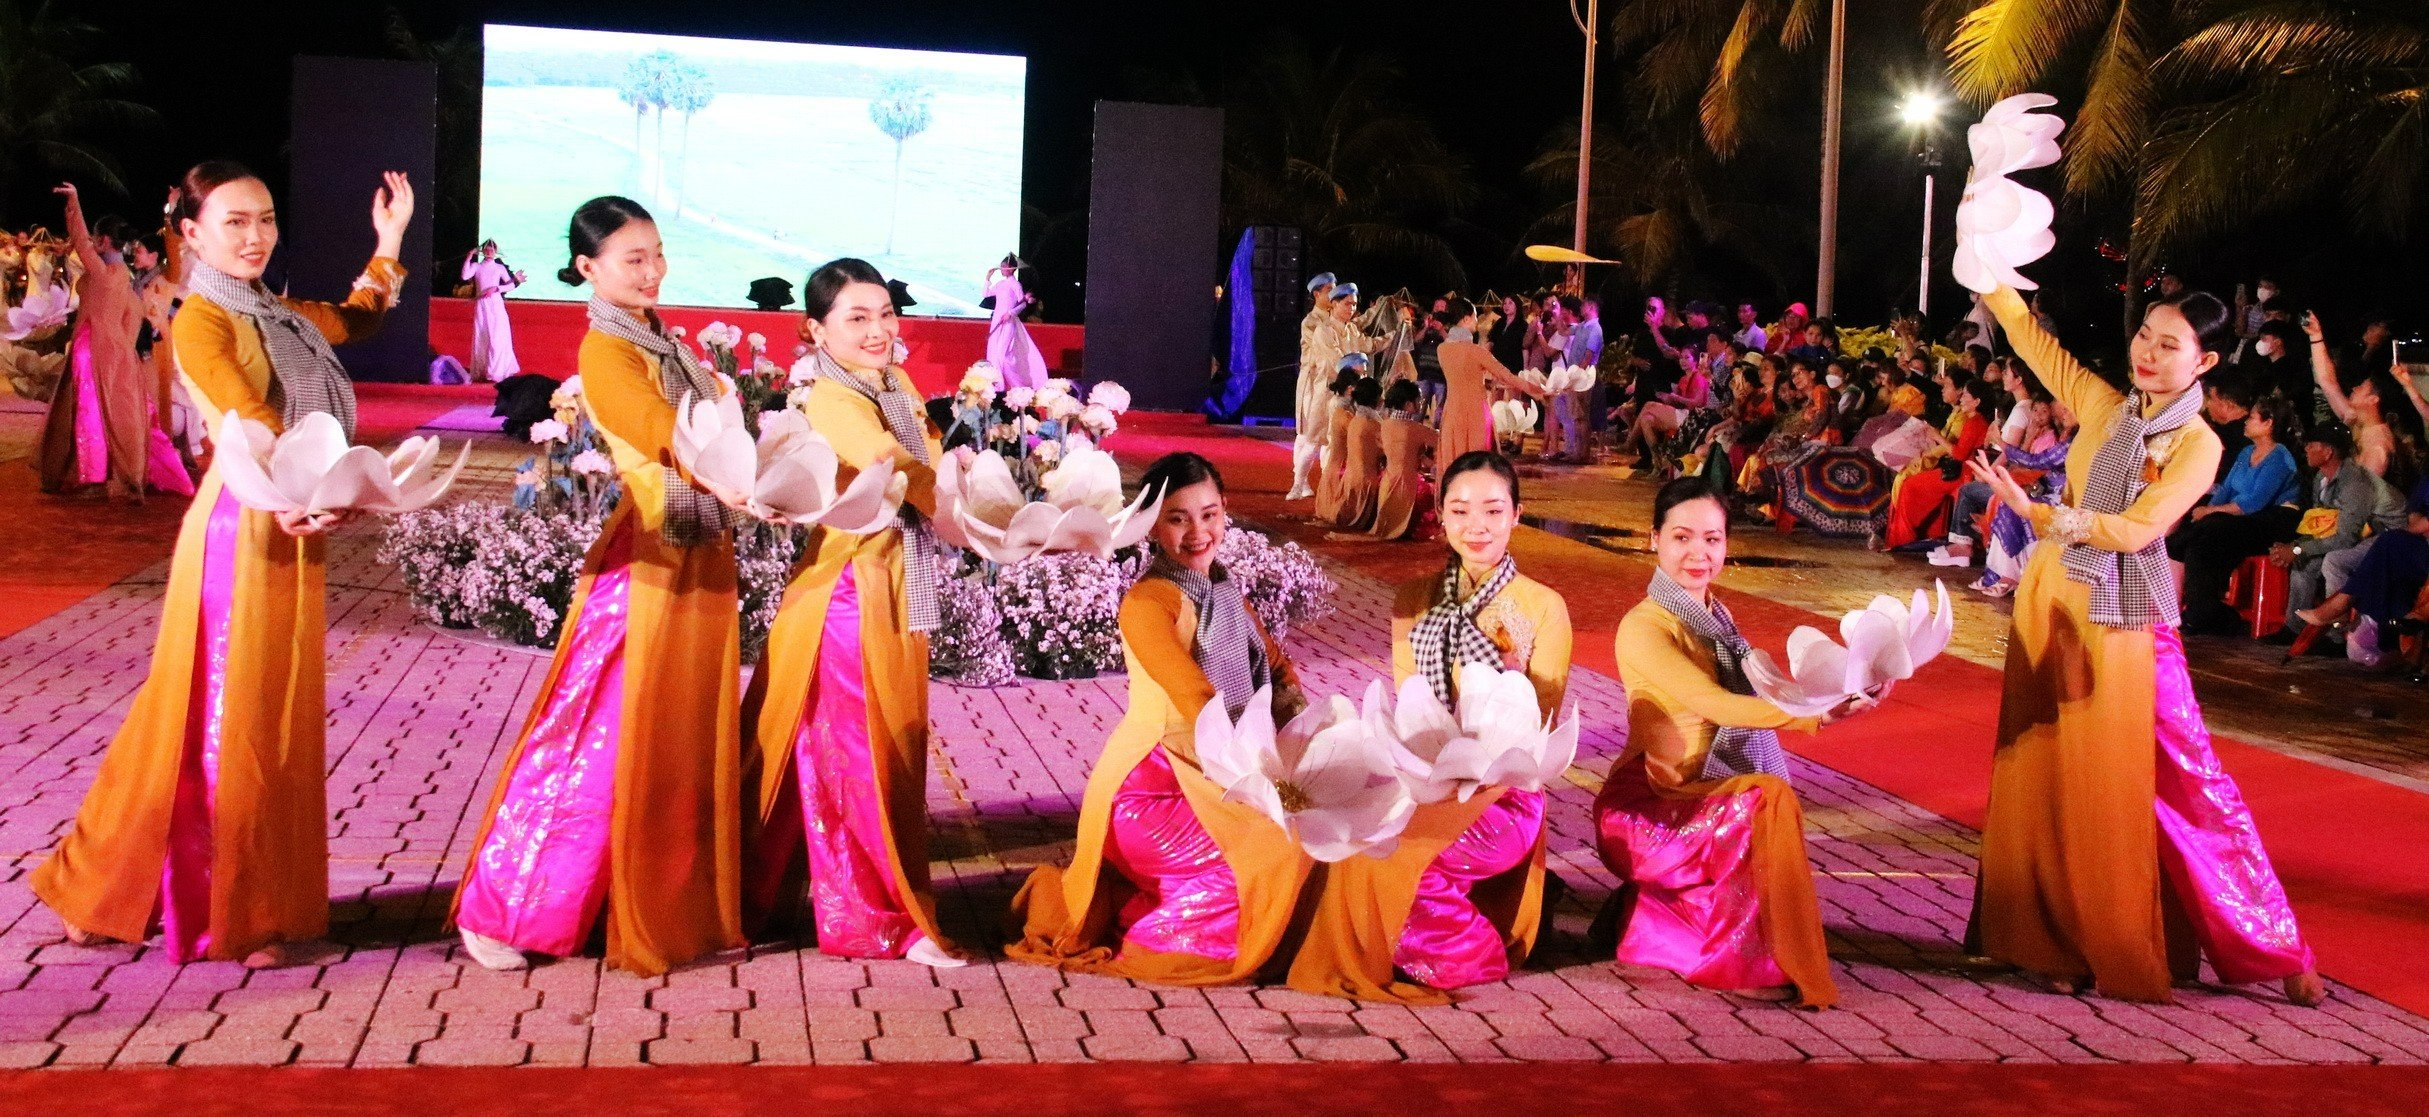 Lễ hội áo dài lớn nhất từ trước đến nay tại Nha Trang - 2